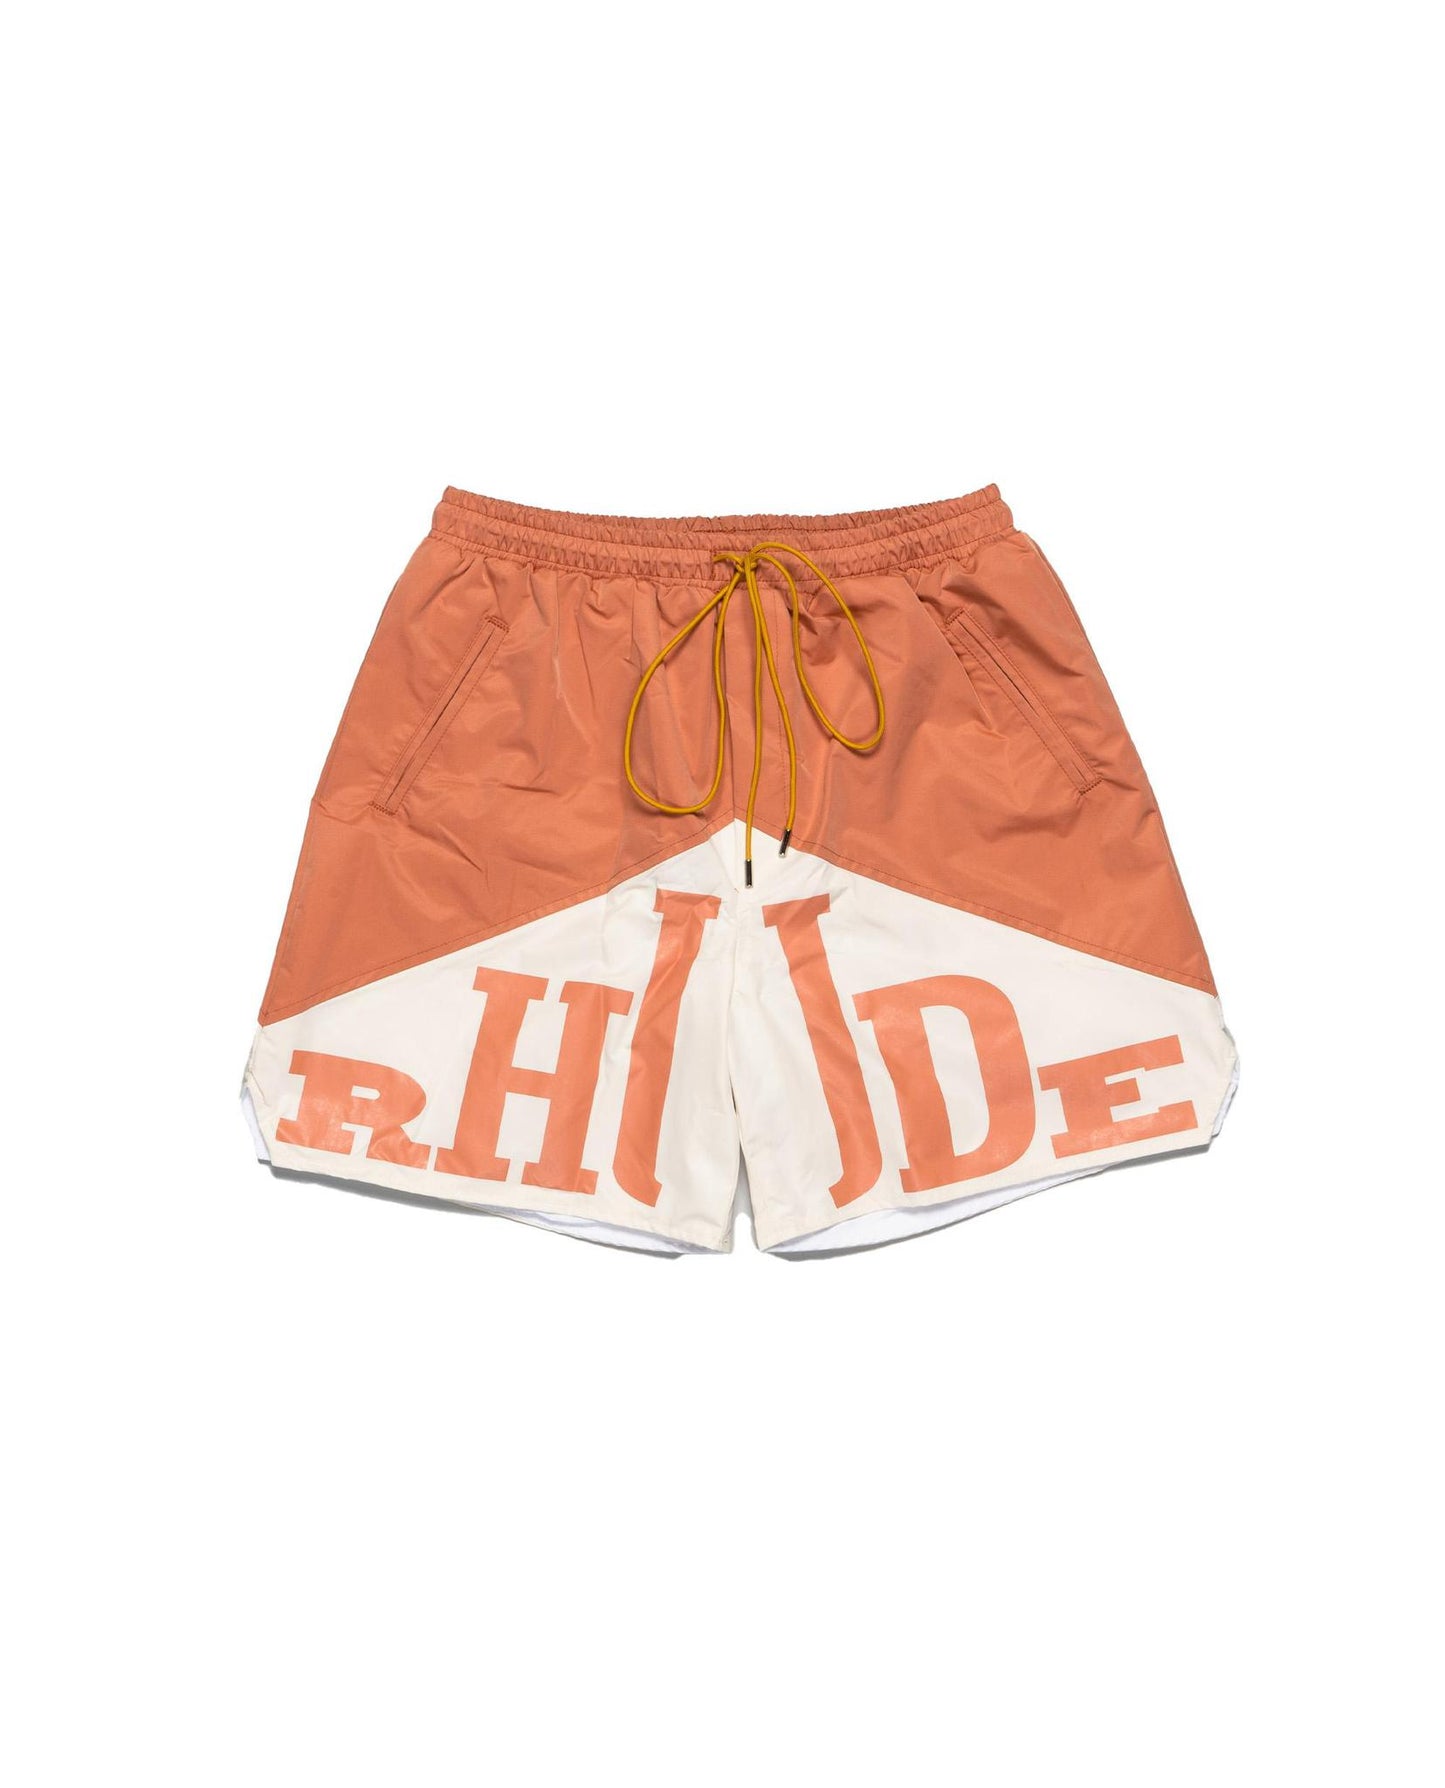 
                    
                      Rhude Orange Yachting Short
                    
                  